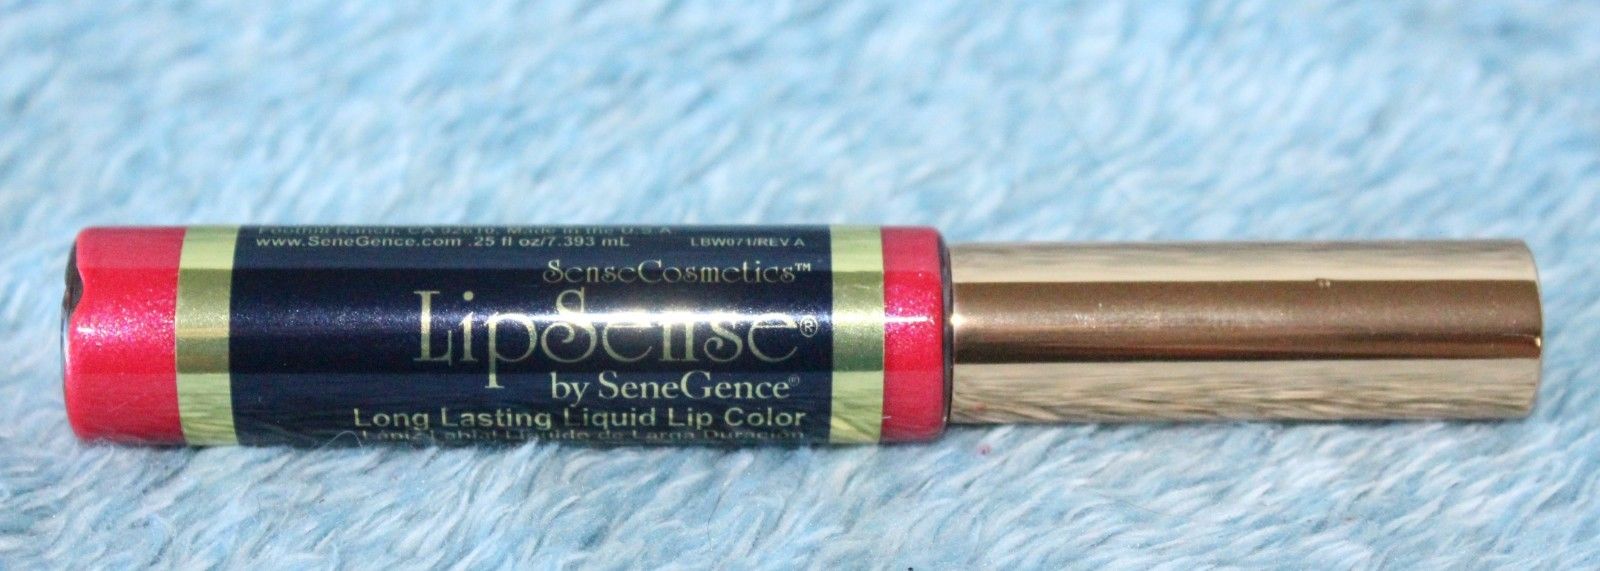 LipSense Plumeria (New and Sealed) Color Lips